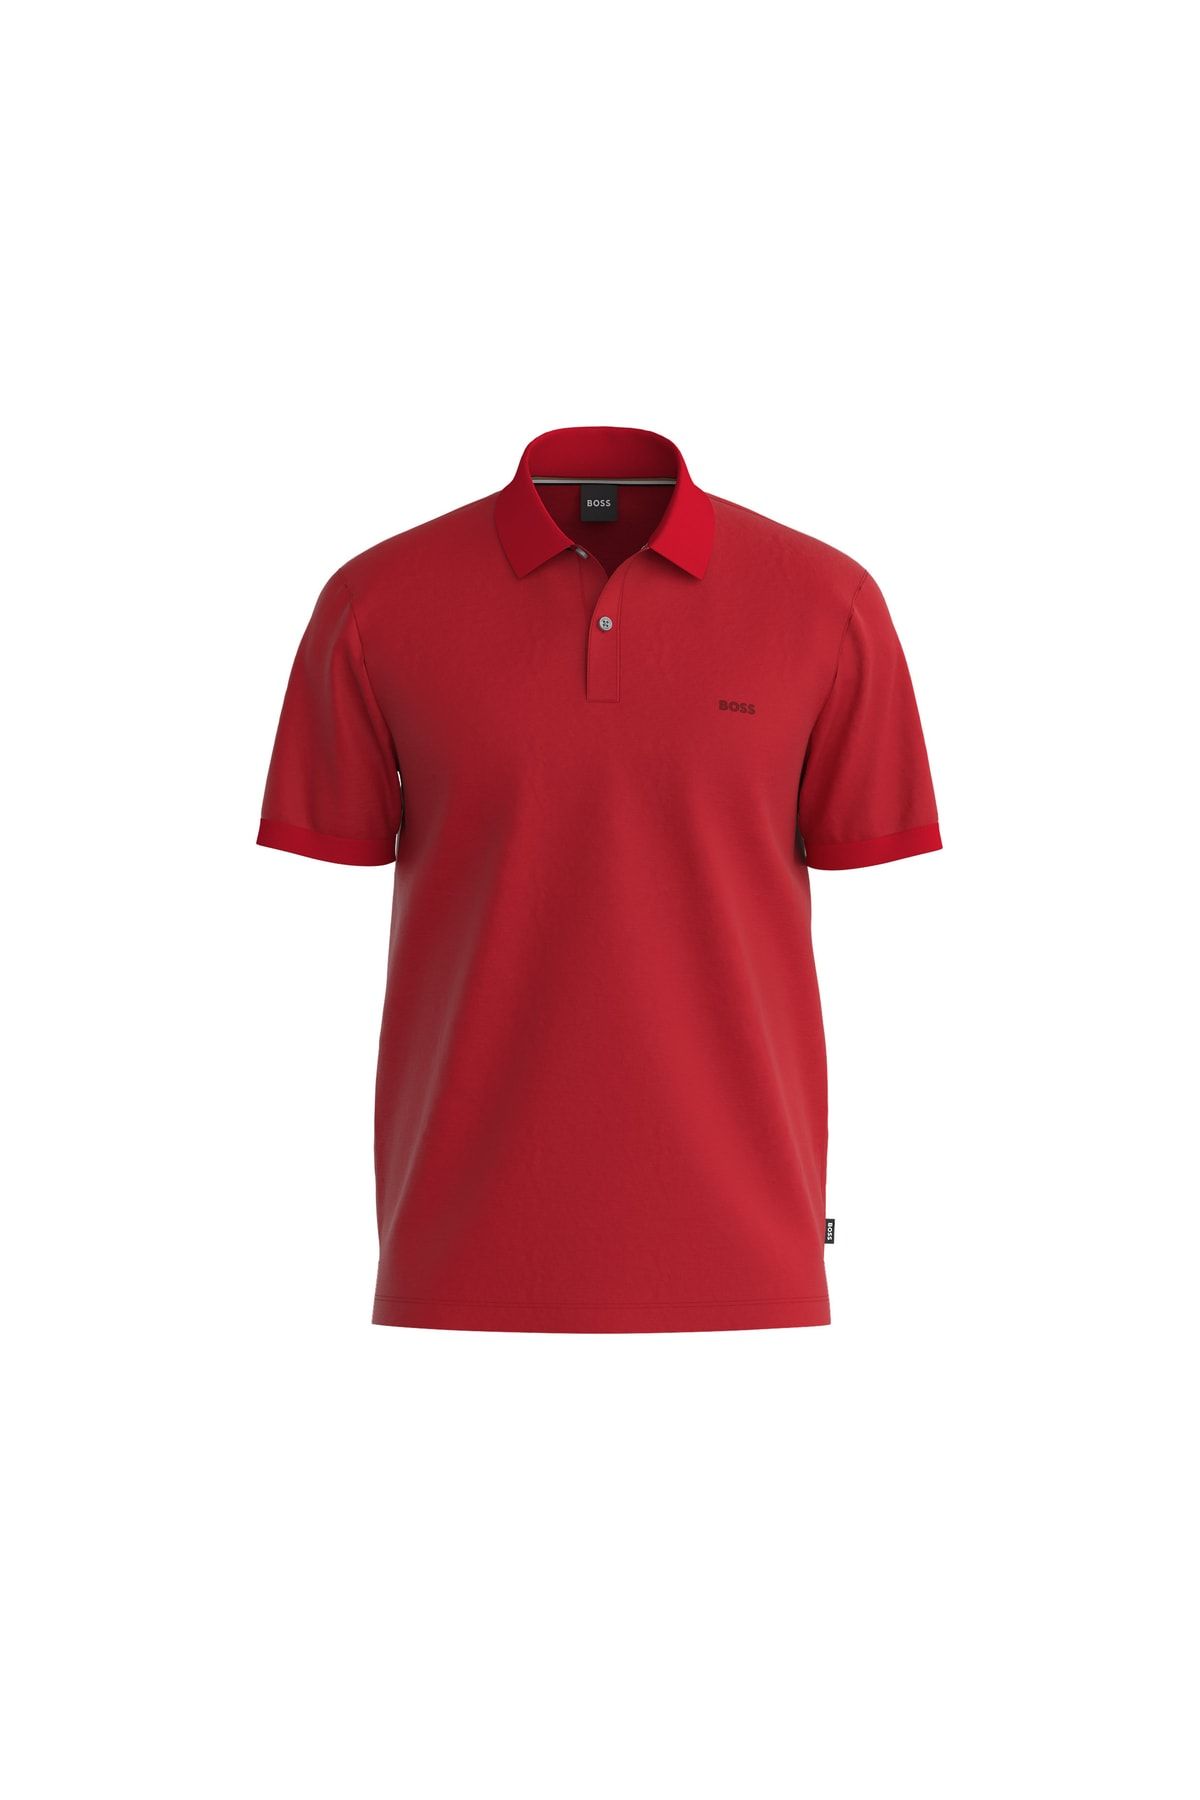 BOSS Erkek Regular Fit Kısa Kollu Düz Polo Yaka Kırmızı Polo Yaka T-shirt 50468301-628